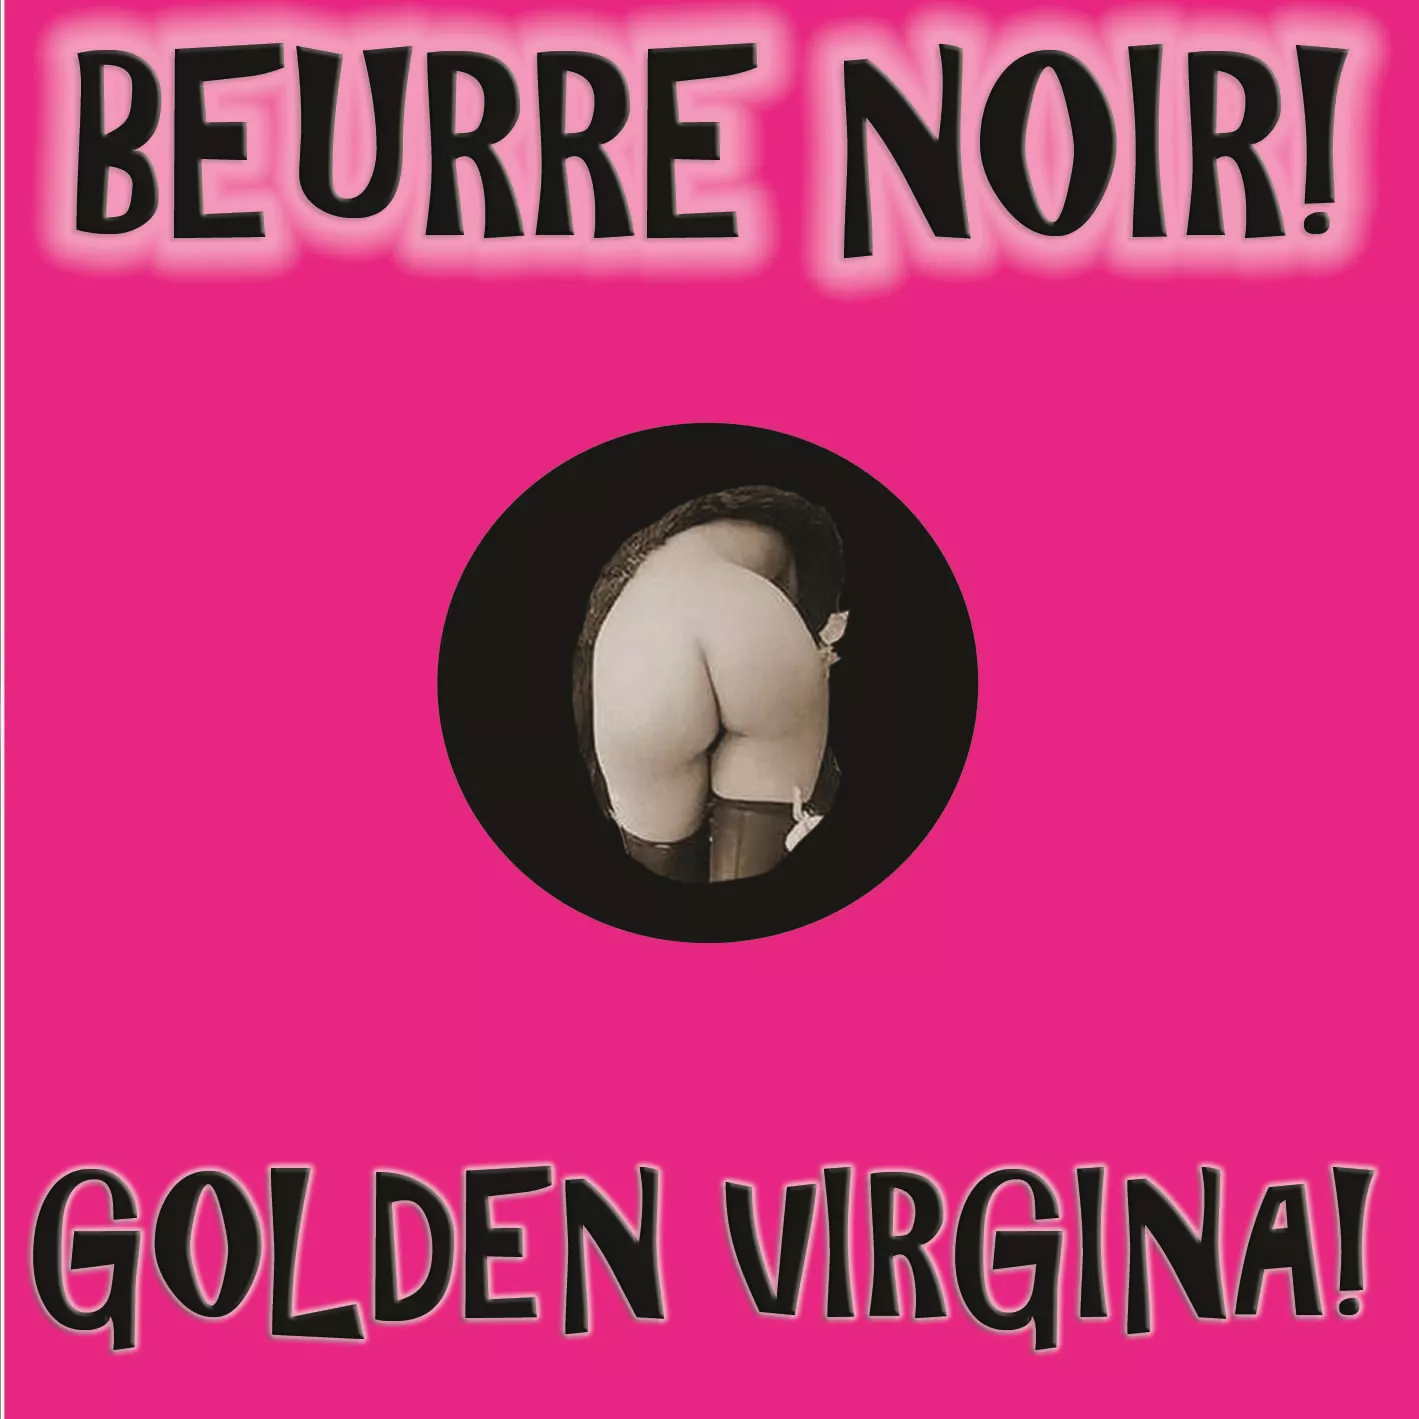 Golden Virgina! - Beurrenoir